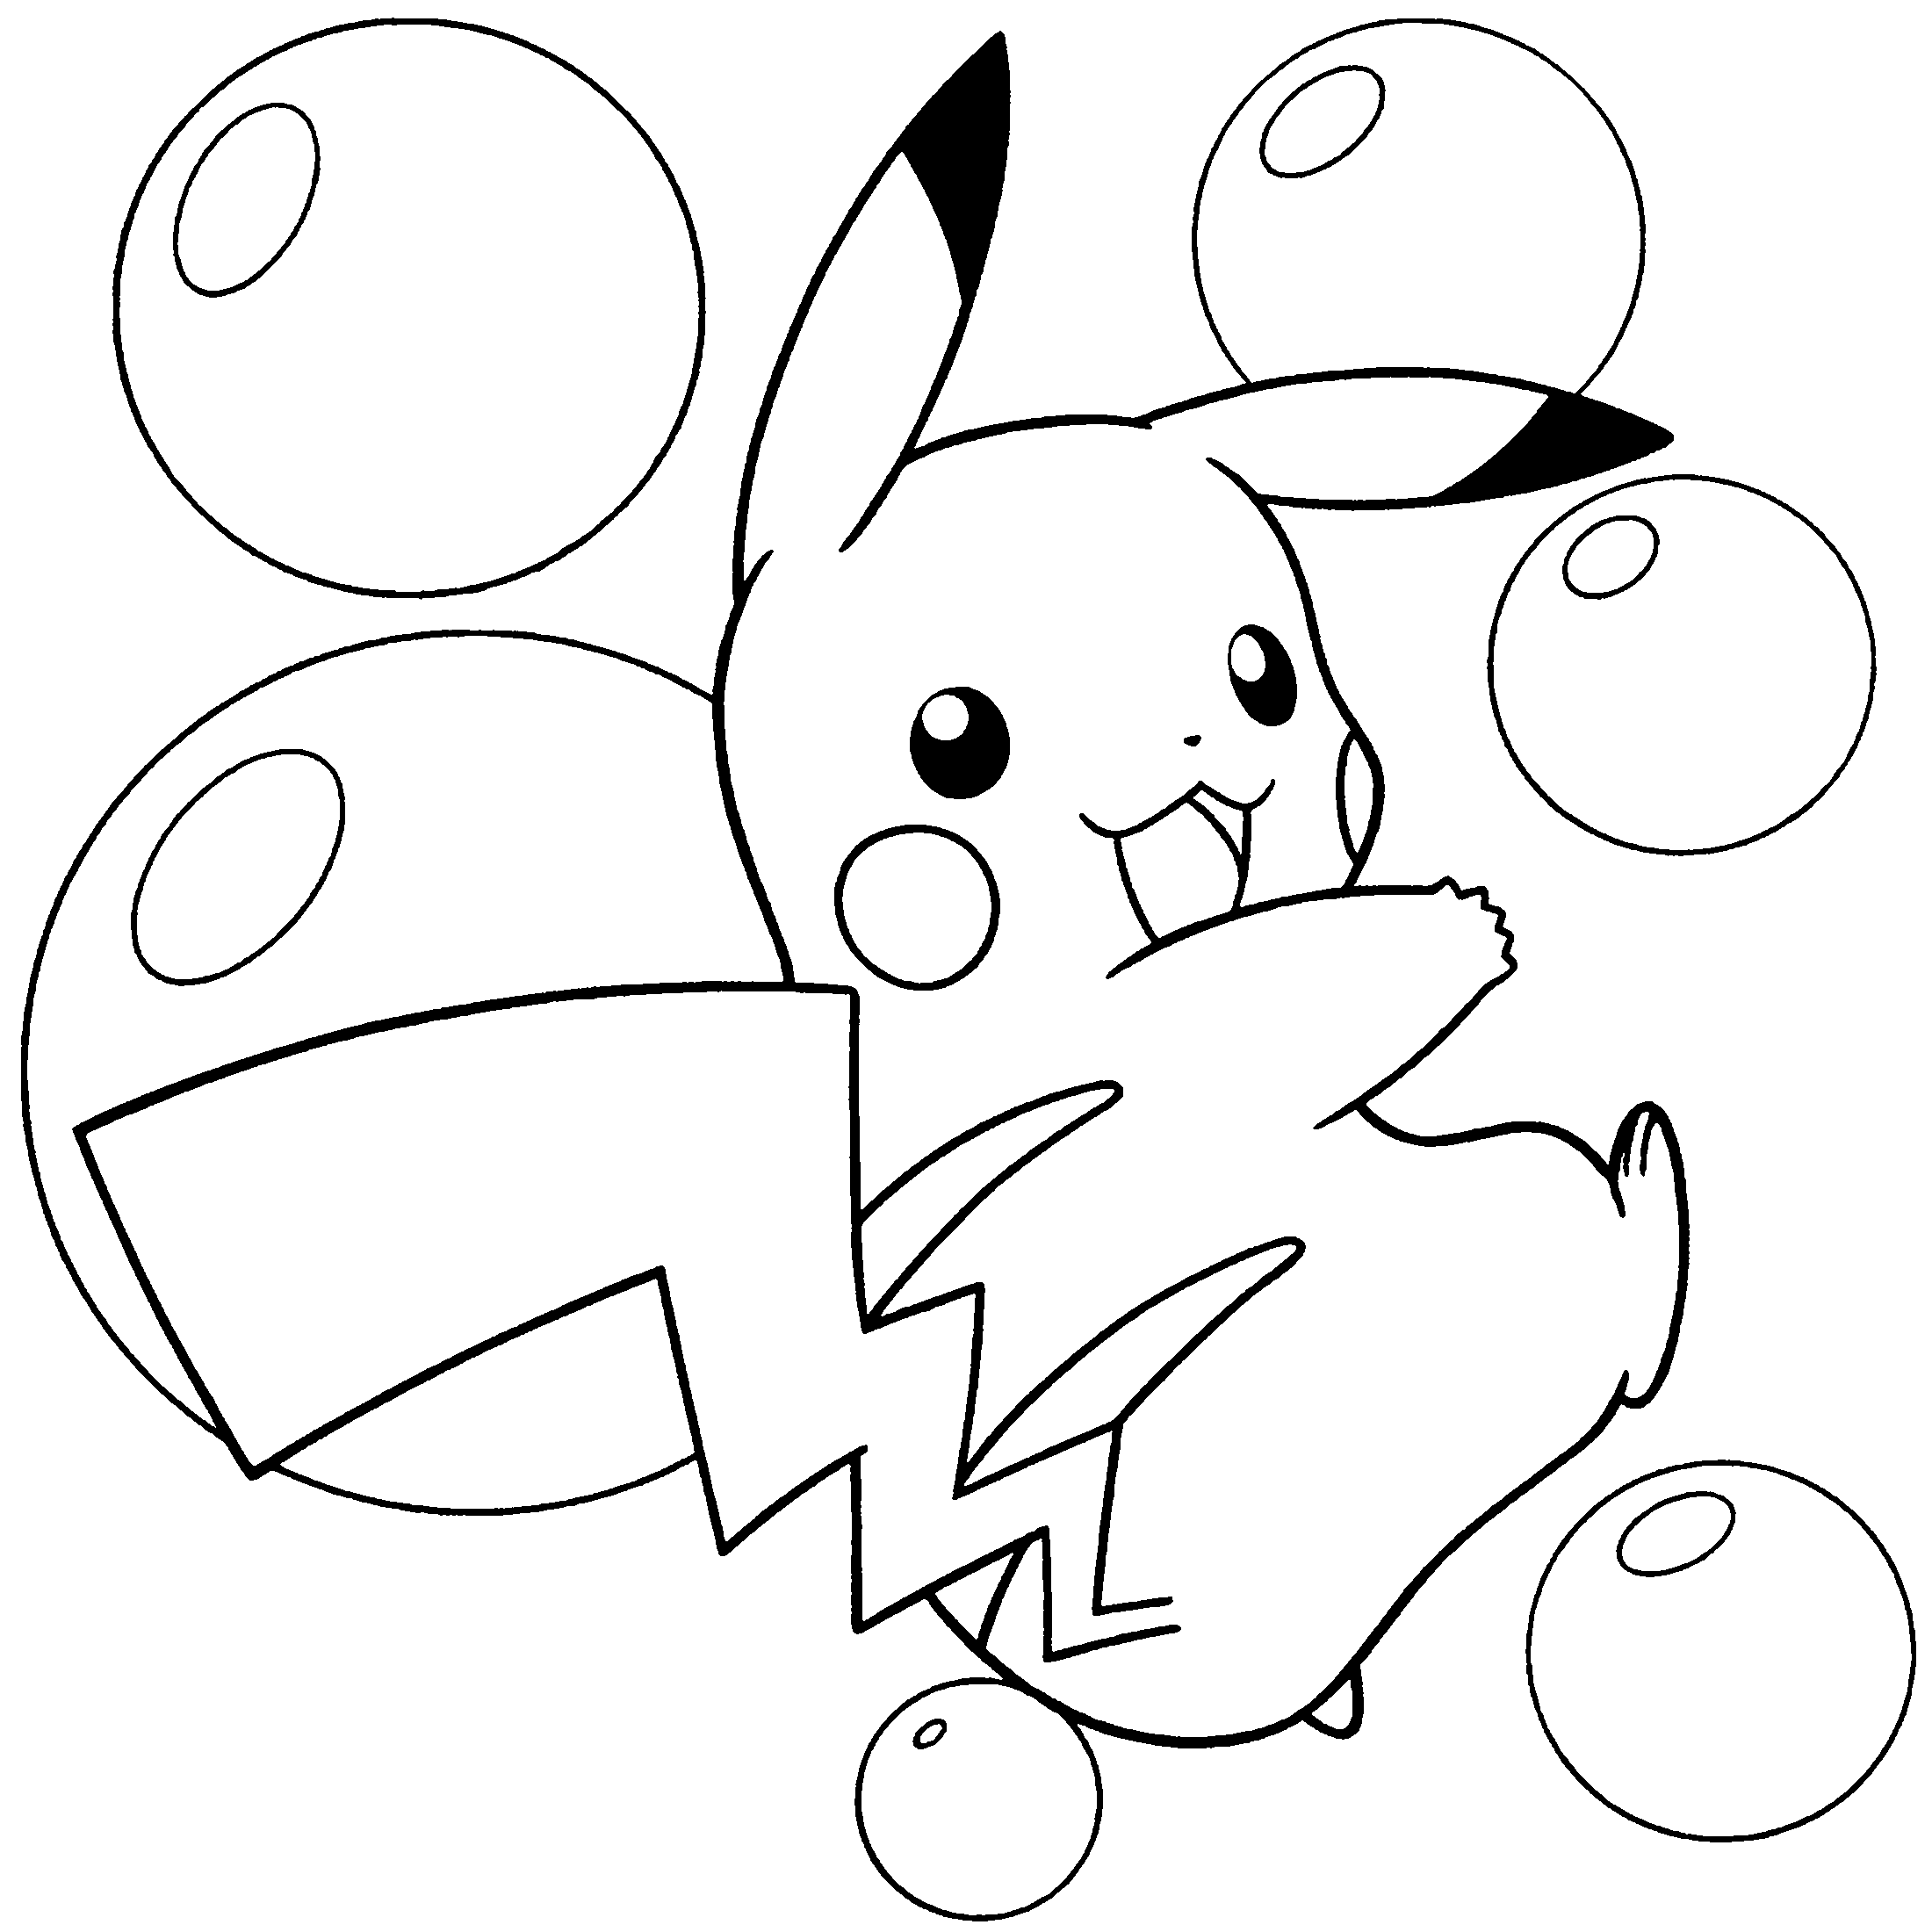 Pikachu Pokemon tra le bolle di sapone